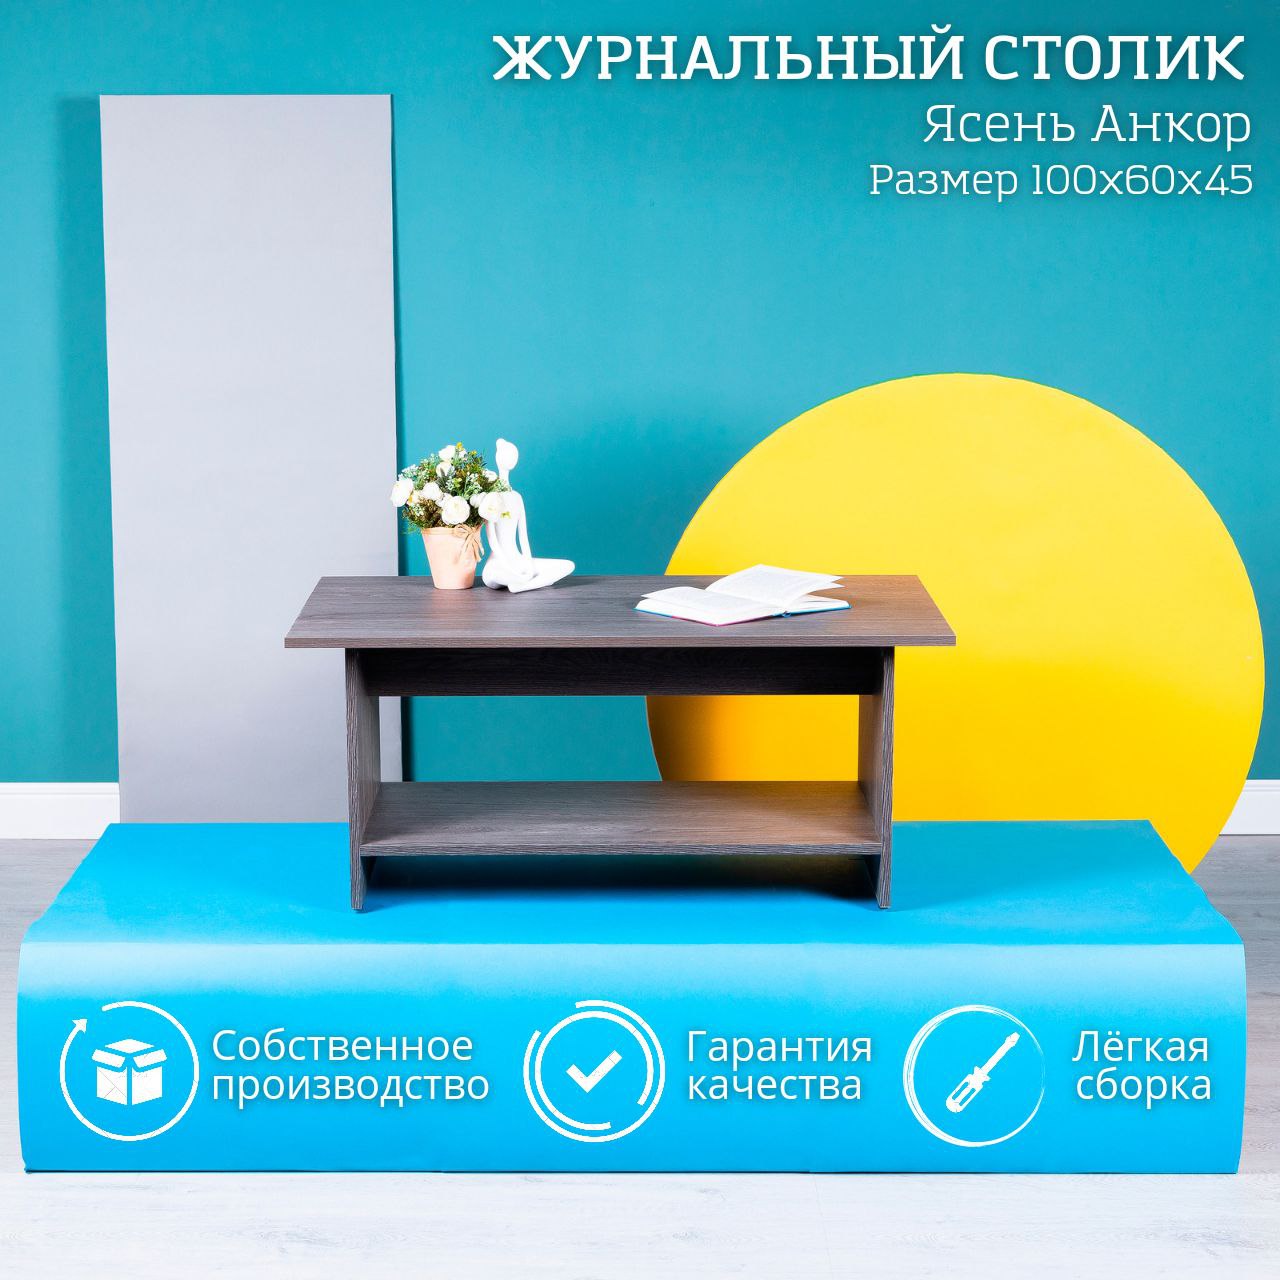 Журнальный стол для гостиной STOCKMEBEL Ясень Анкор 100x60x45см